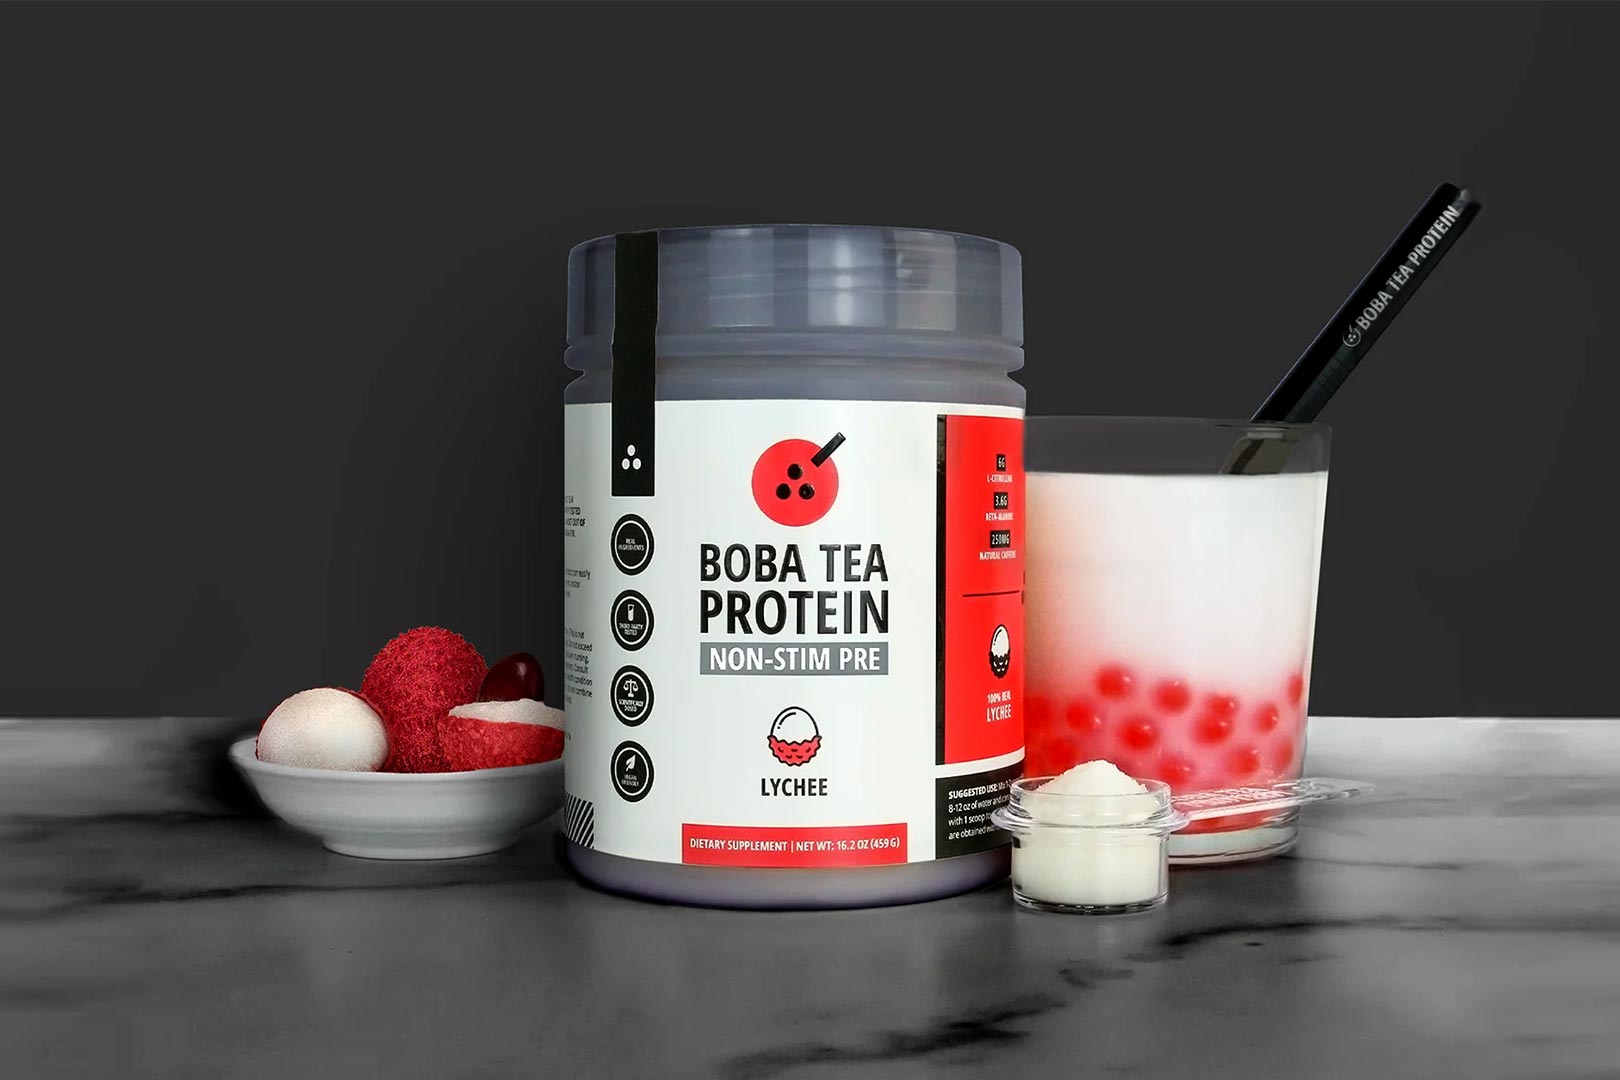 Boba Tea Protein Non Stim Pre